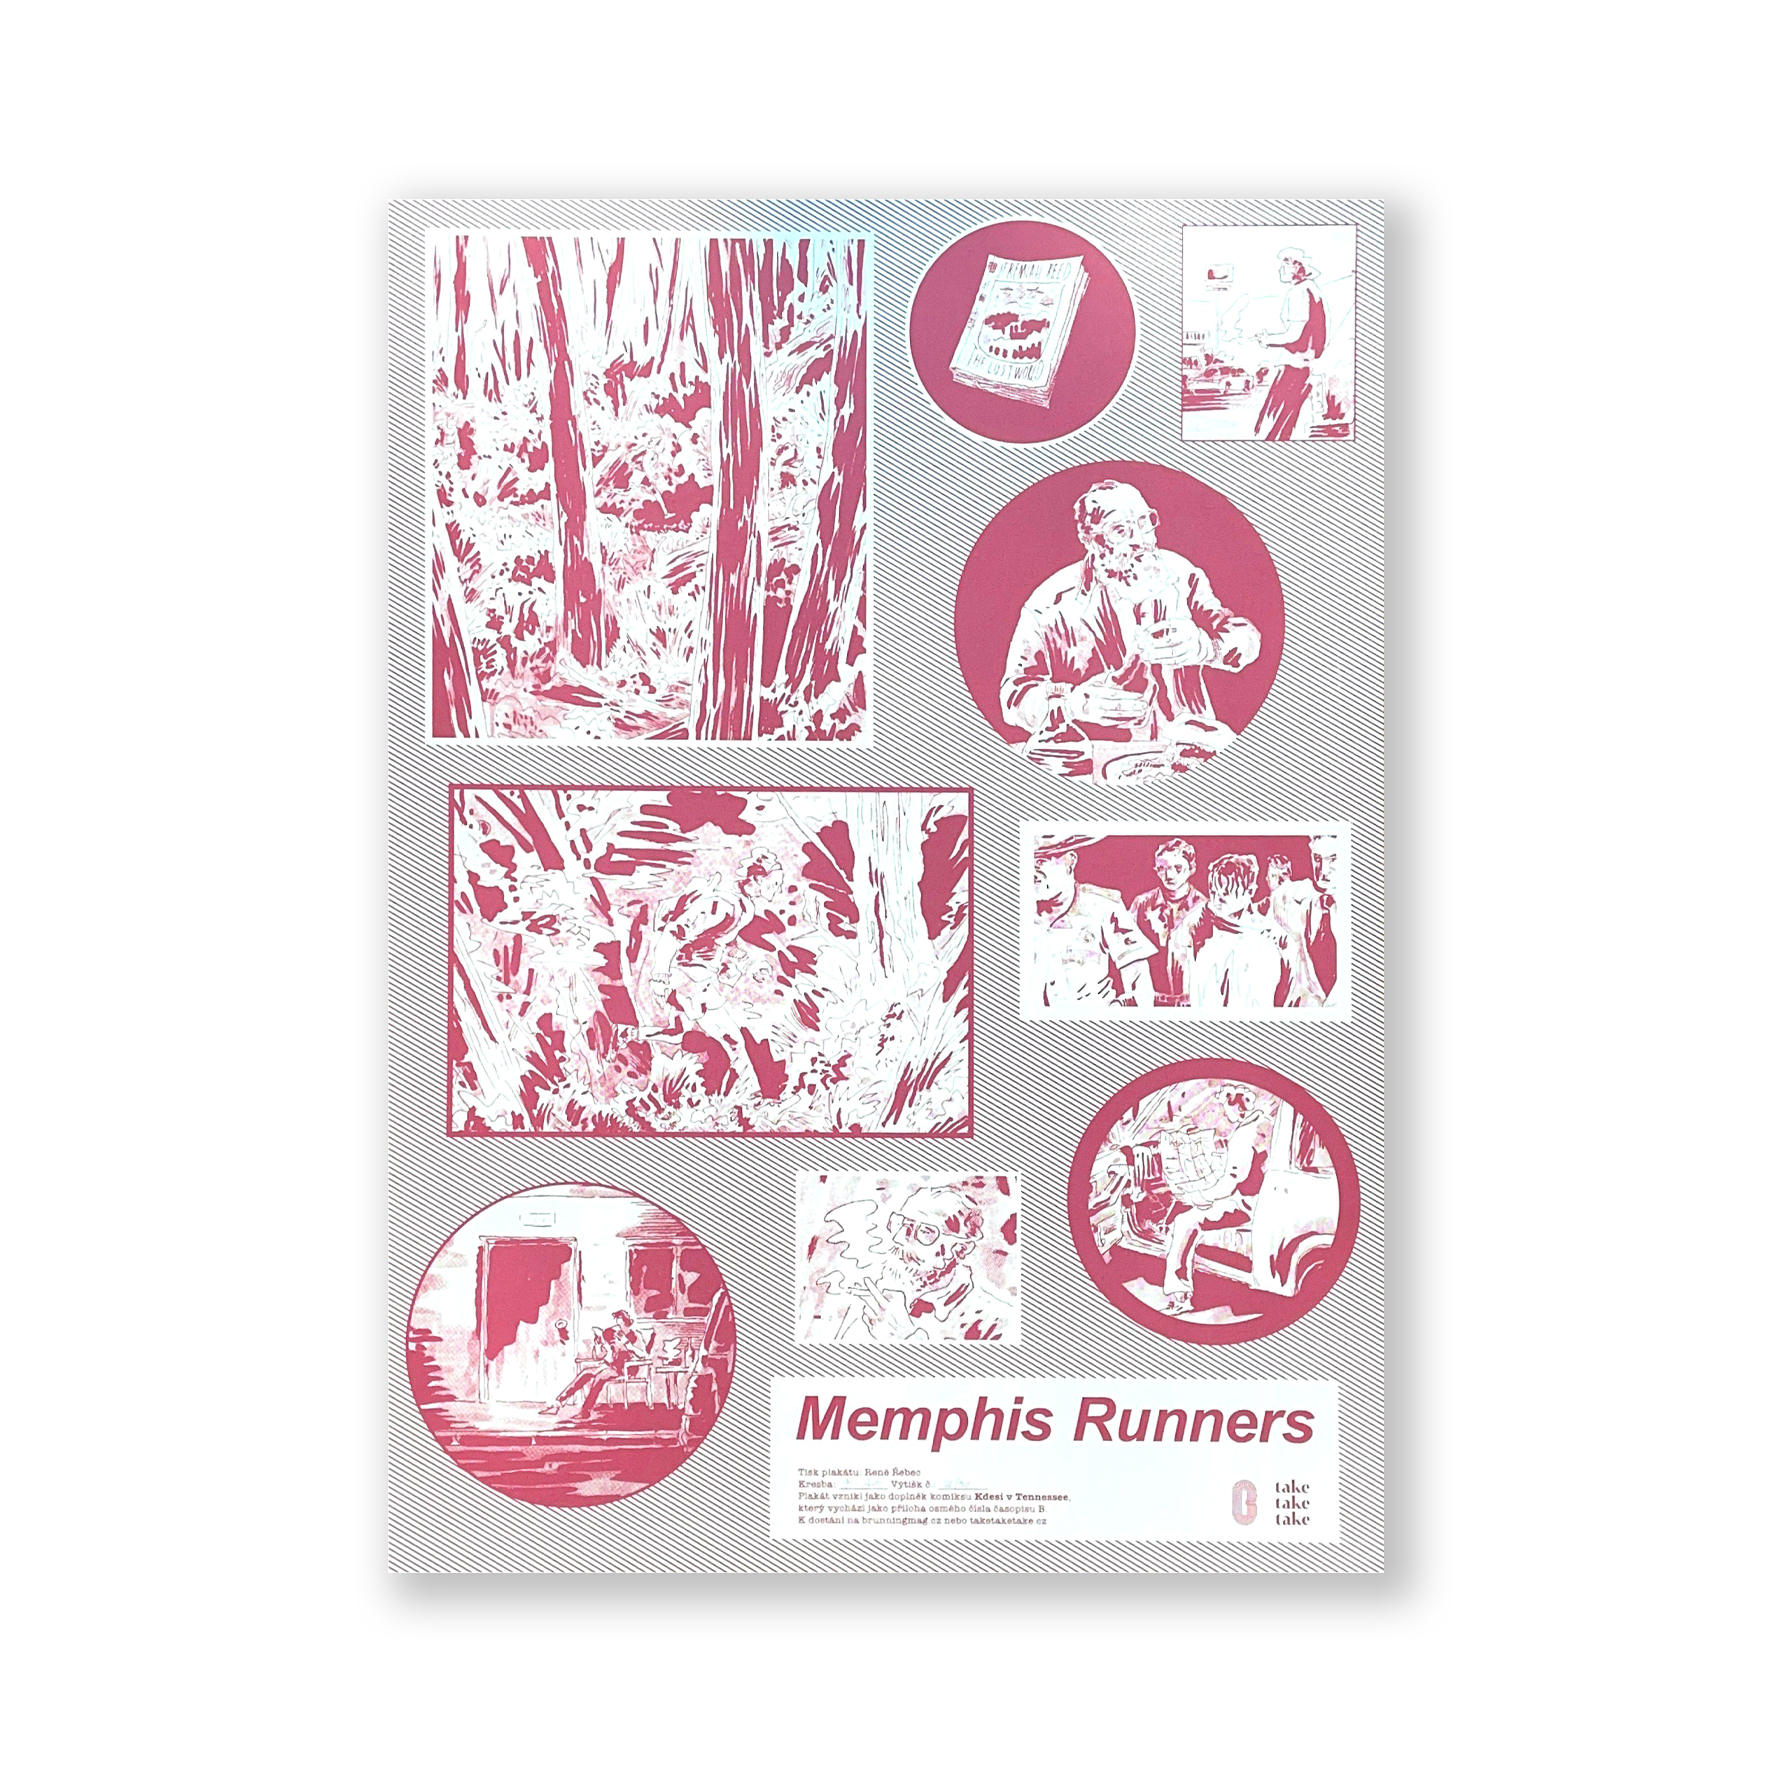 Memphis runners